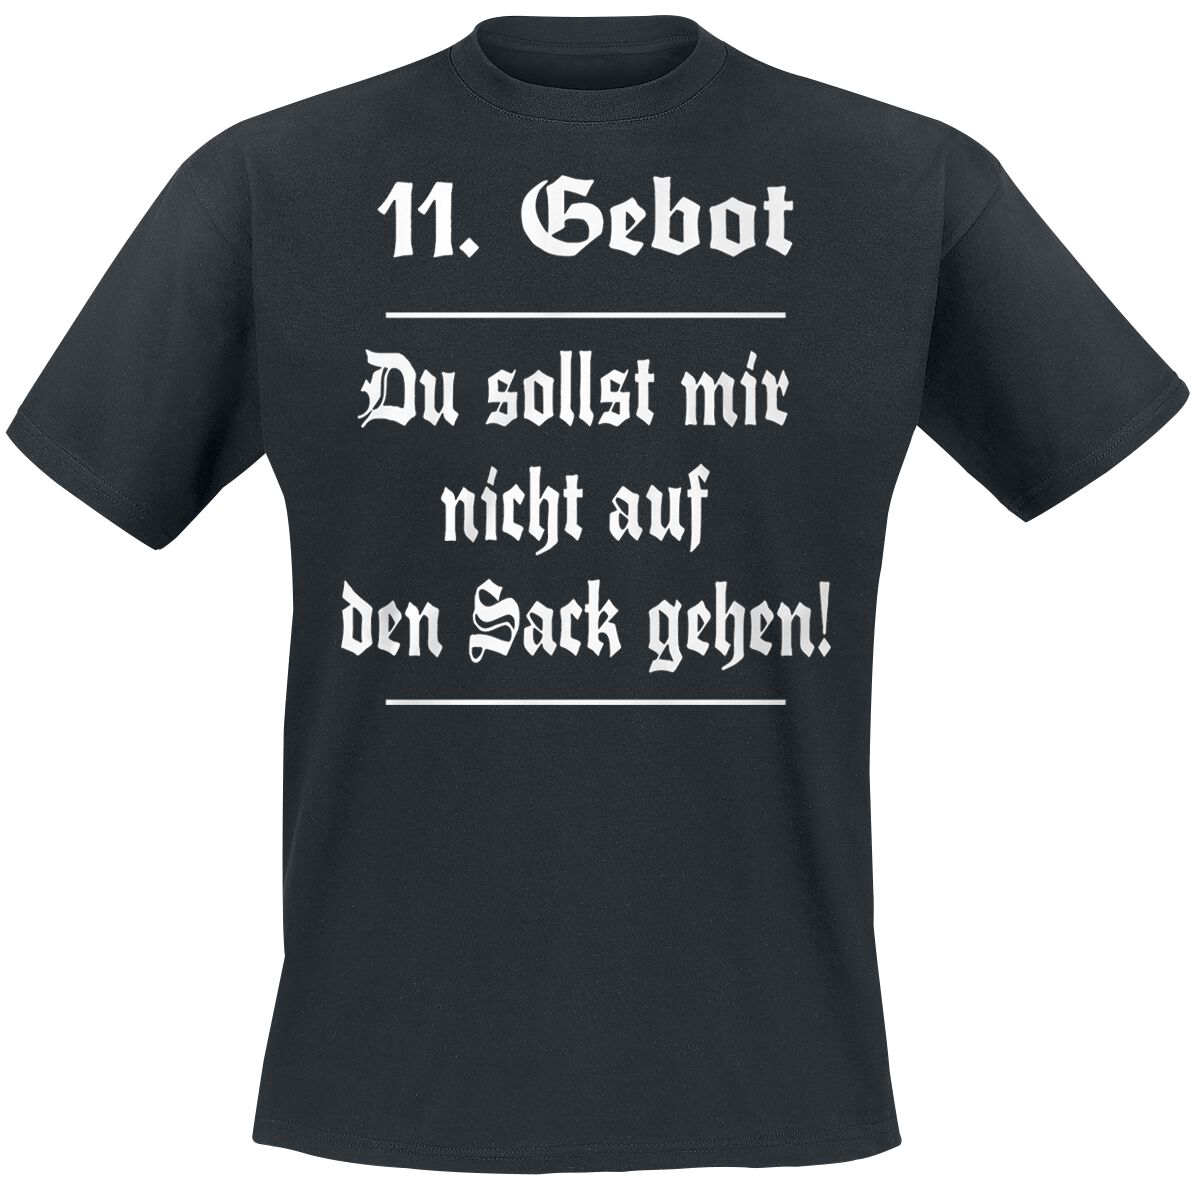 Sprüche T-Shirt - 11. Gebot - S bis 5XL - für Männer - Größe 4XL - schwarz